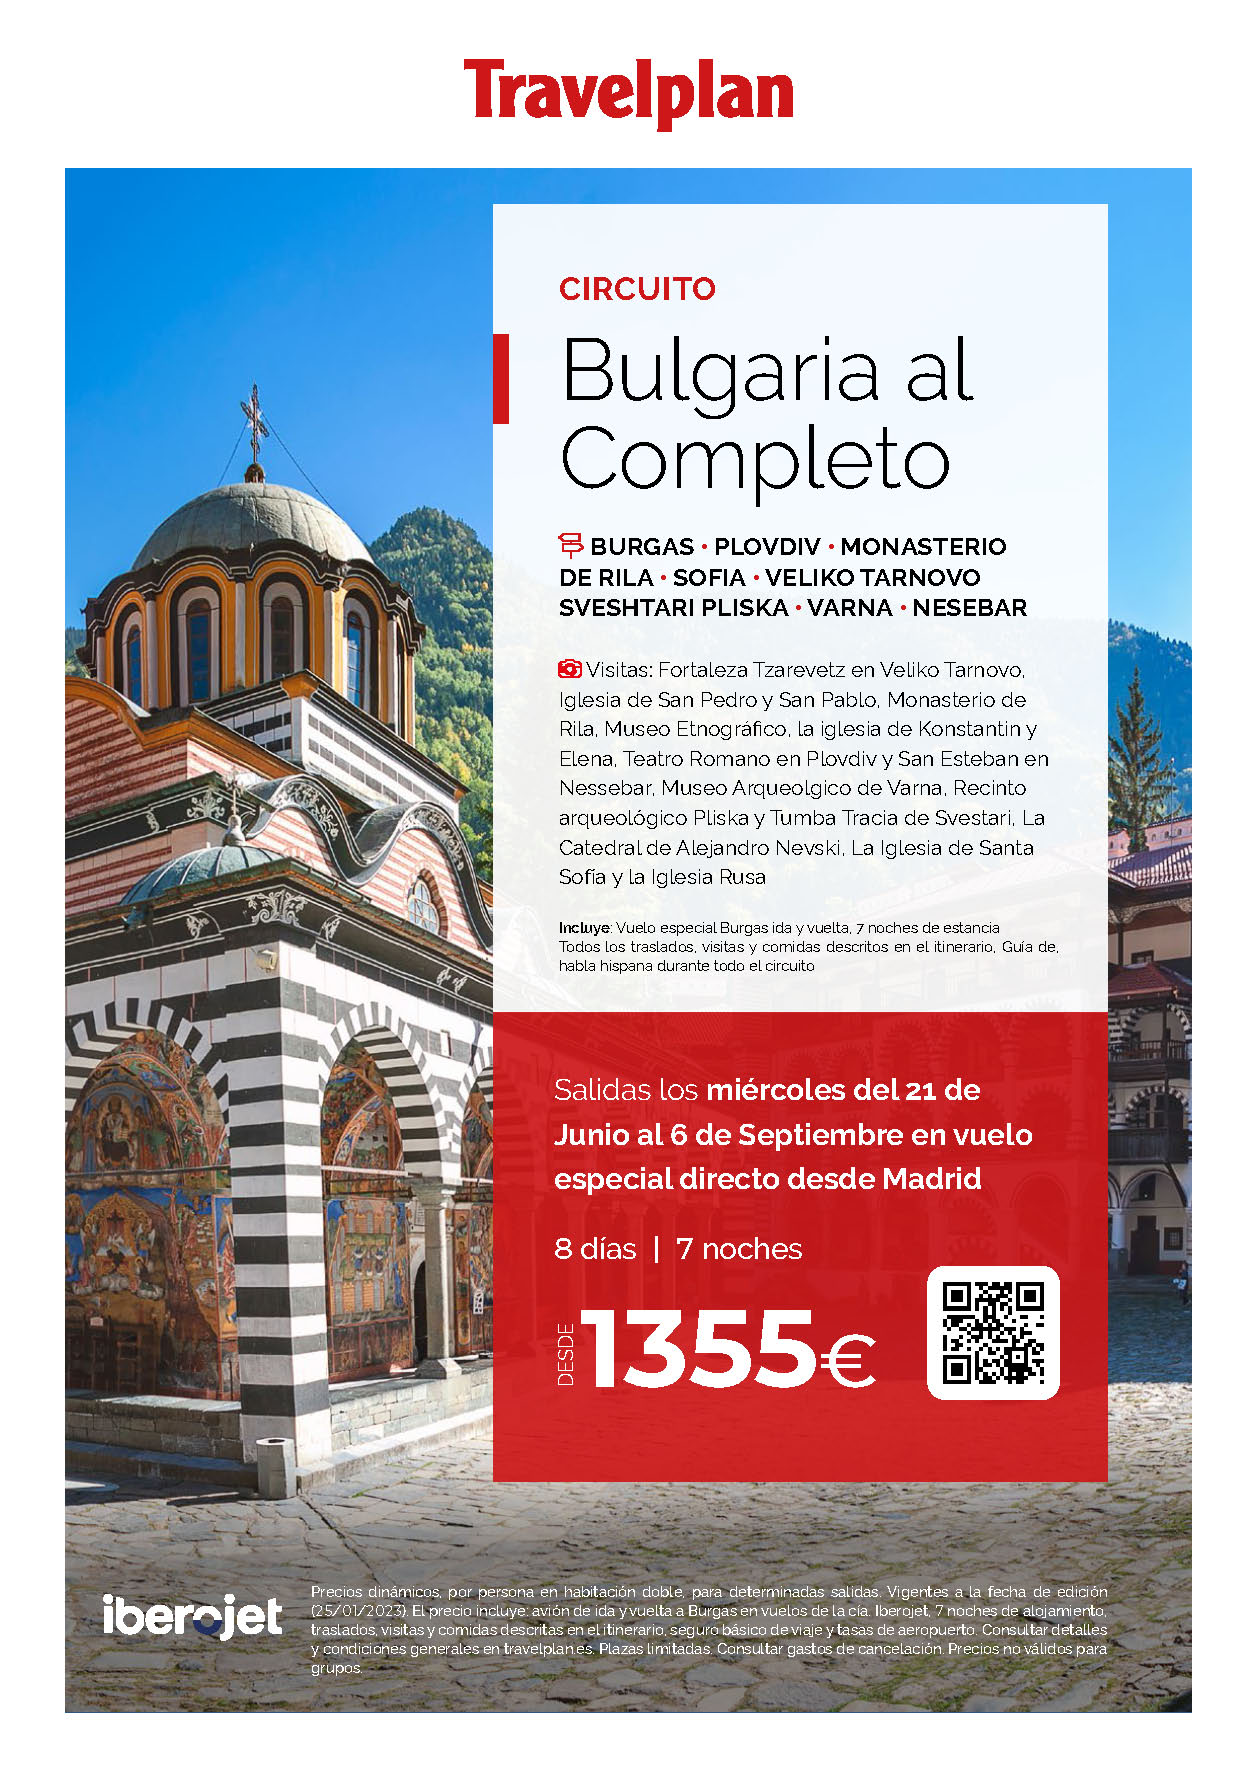 Oferta Travelplan Verano 2023 Circuito Bulgaria al Completo 8 dias salida en vuelo especial directo desde Madrid